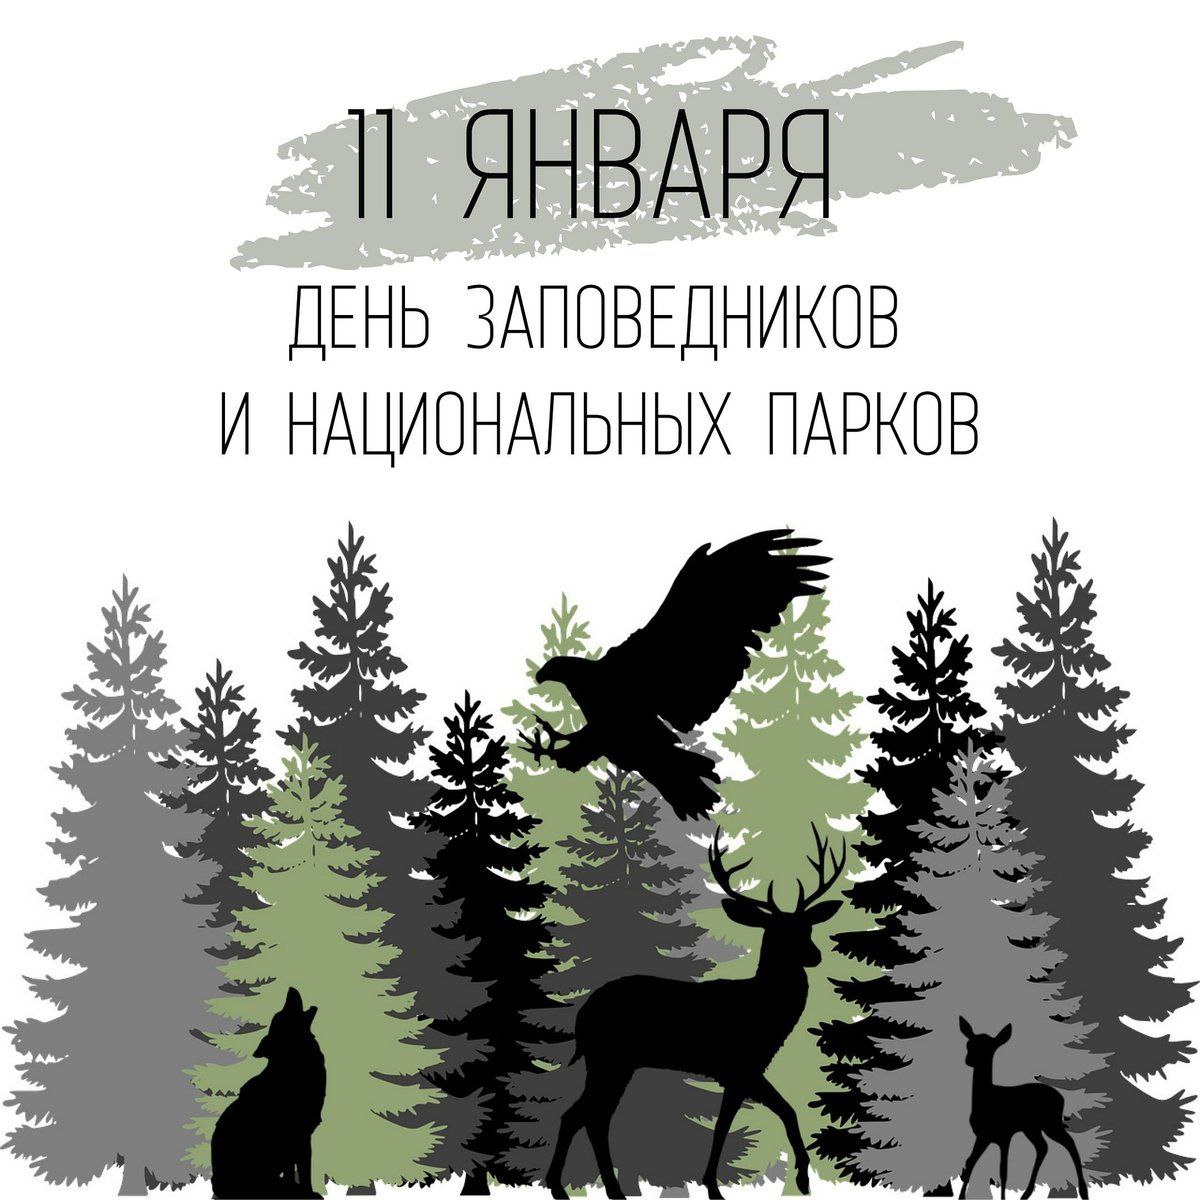 «Всероссийский день заповедников и национальных парков».